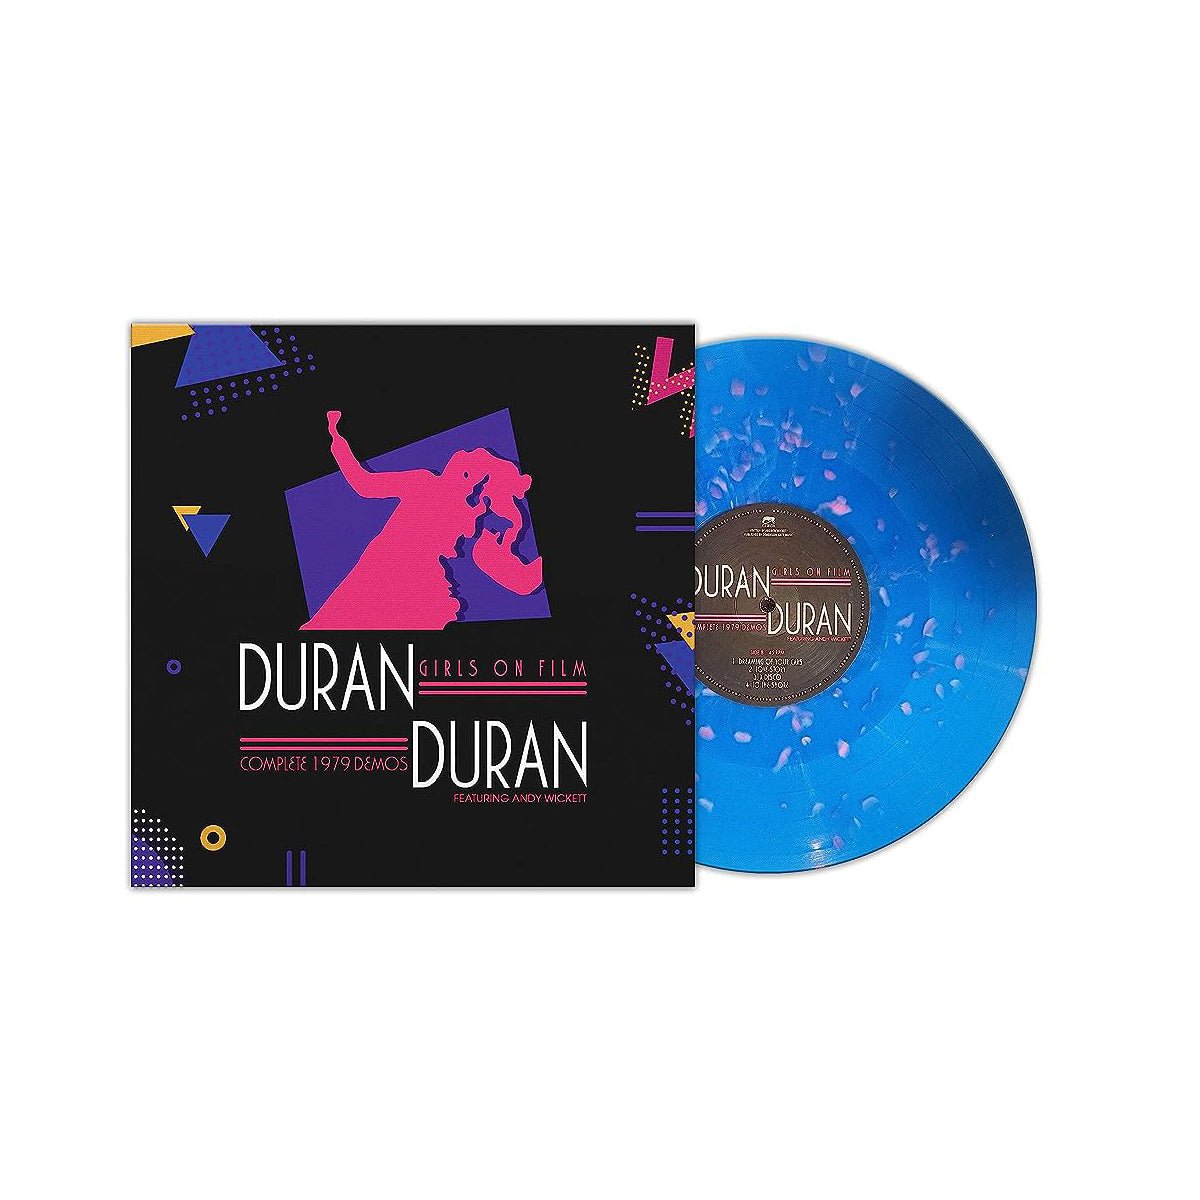 Duran Duran - Girls On Film Vinyl